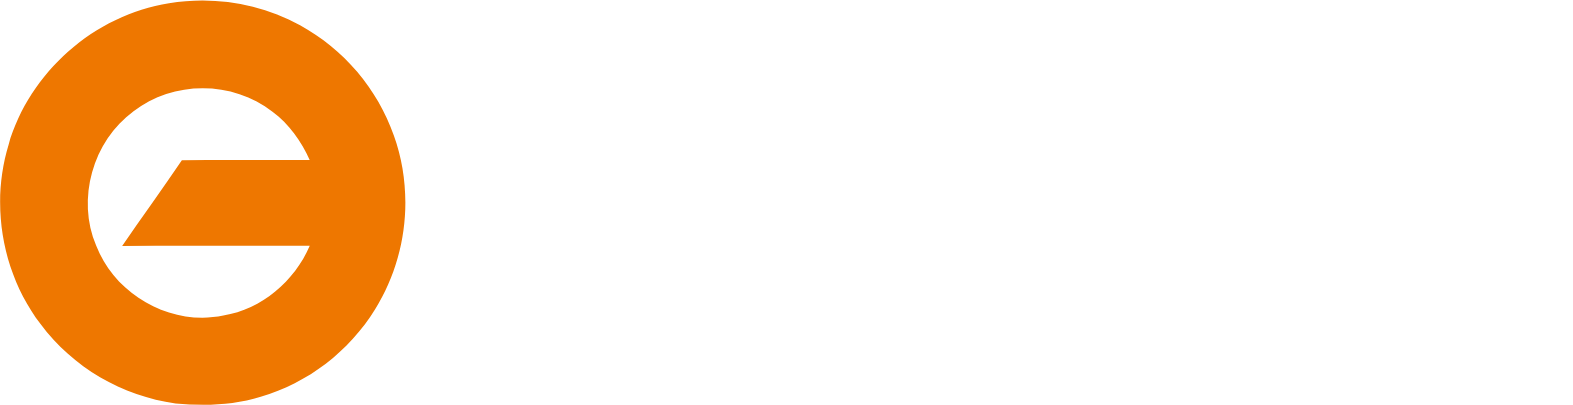 enish logo large for dark backgrounds (transparent PNG)